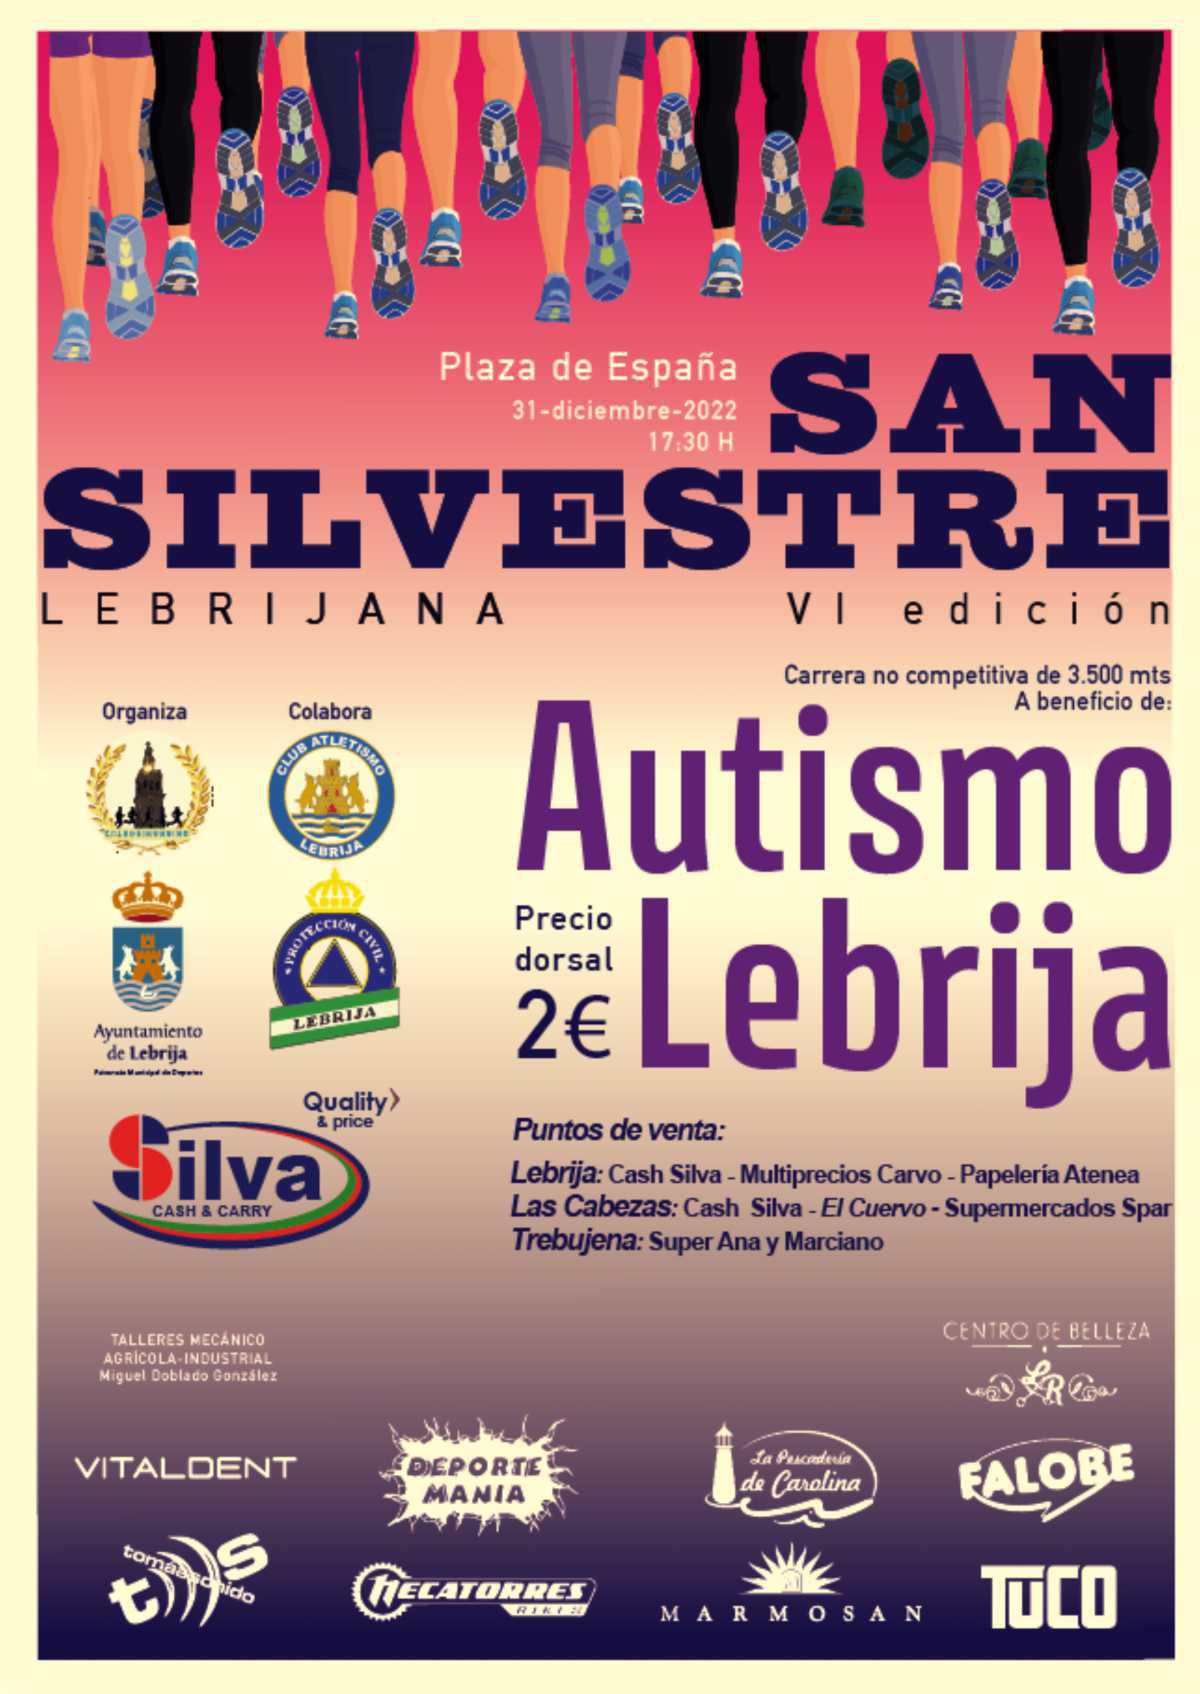 La carrera "San Silvestre lebrijana" tendrá lugar el 31 de diciembre y será a beneficio de la Asociación Autismo Lebrija